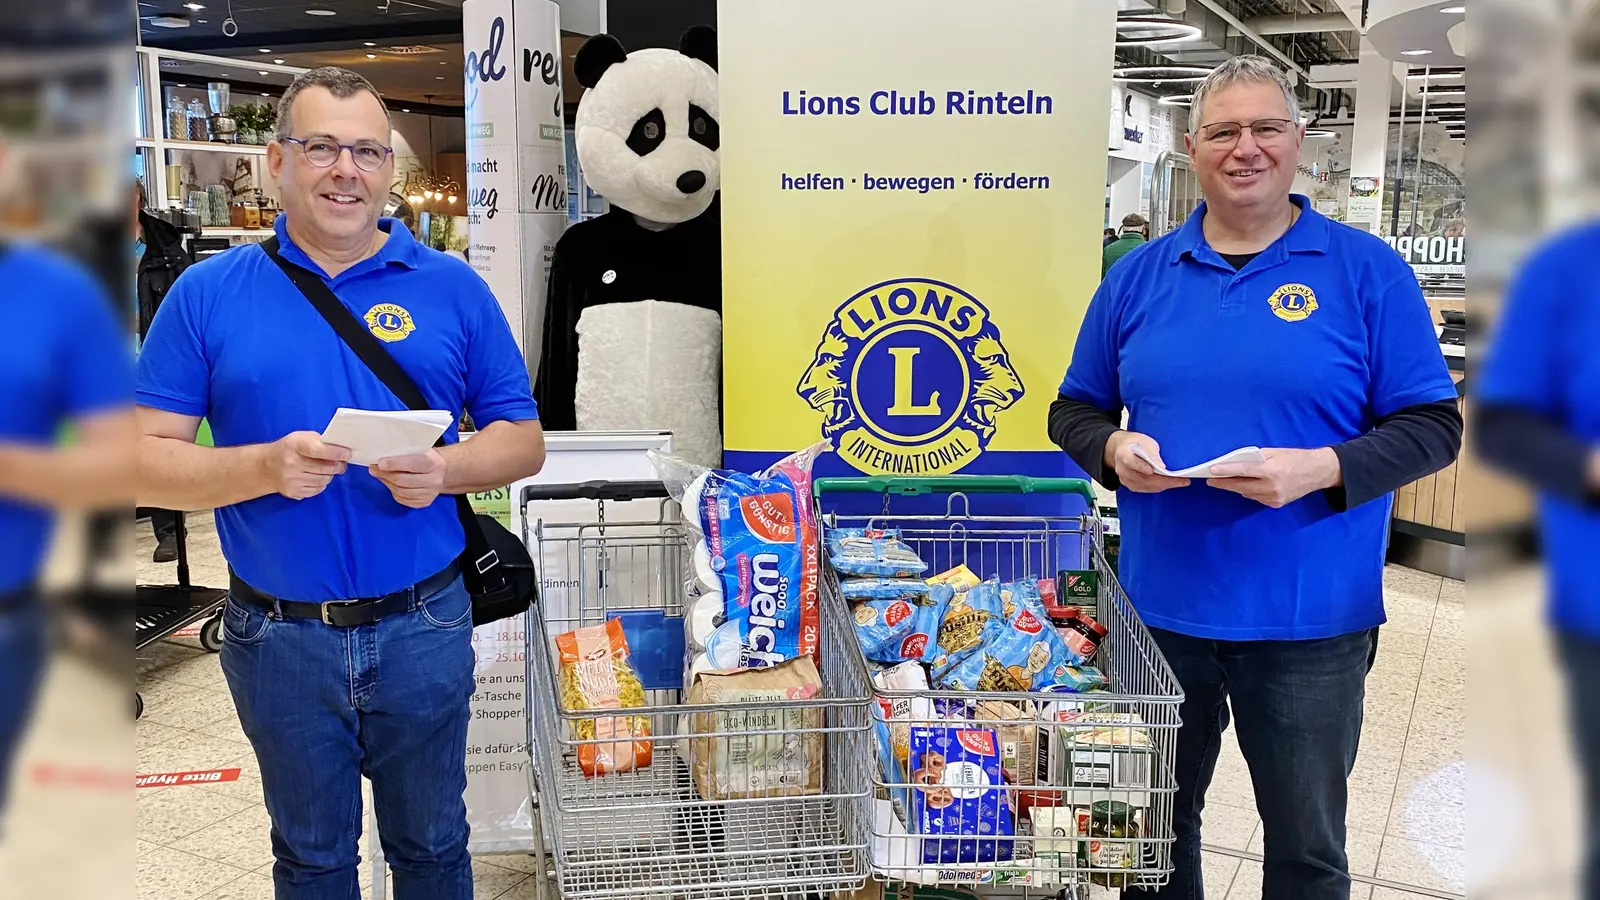 Dr. Martin Scheer und Dirk Ackmann vom LionsClub Rinteln freuen sich über die große Spendenbereitschaft der Einkaufenden im Marktkauf.  (Foto: privat)